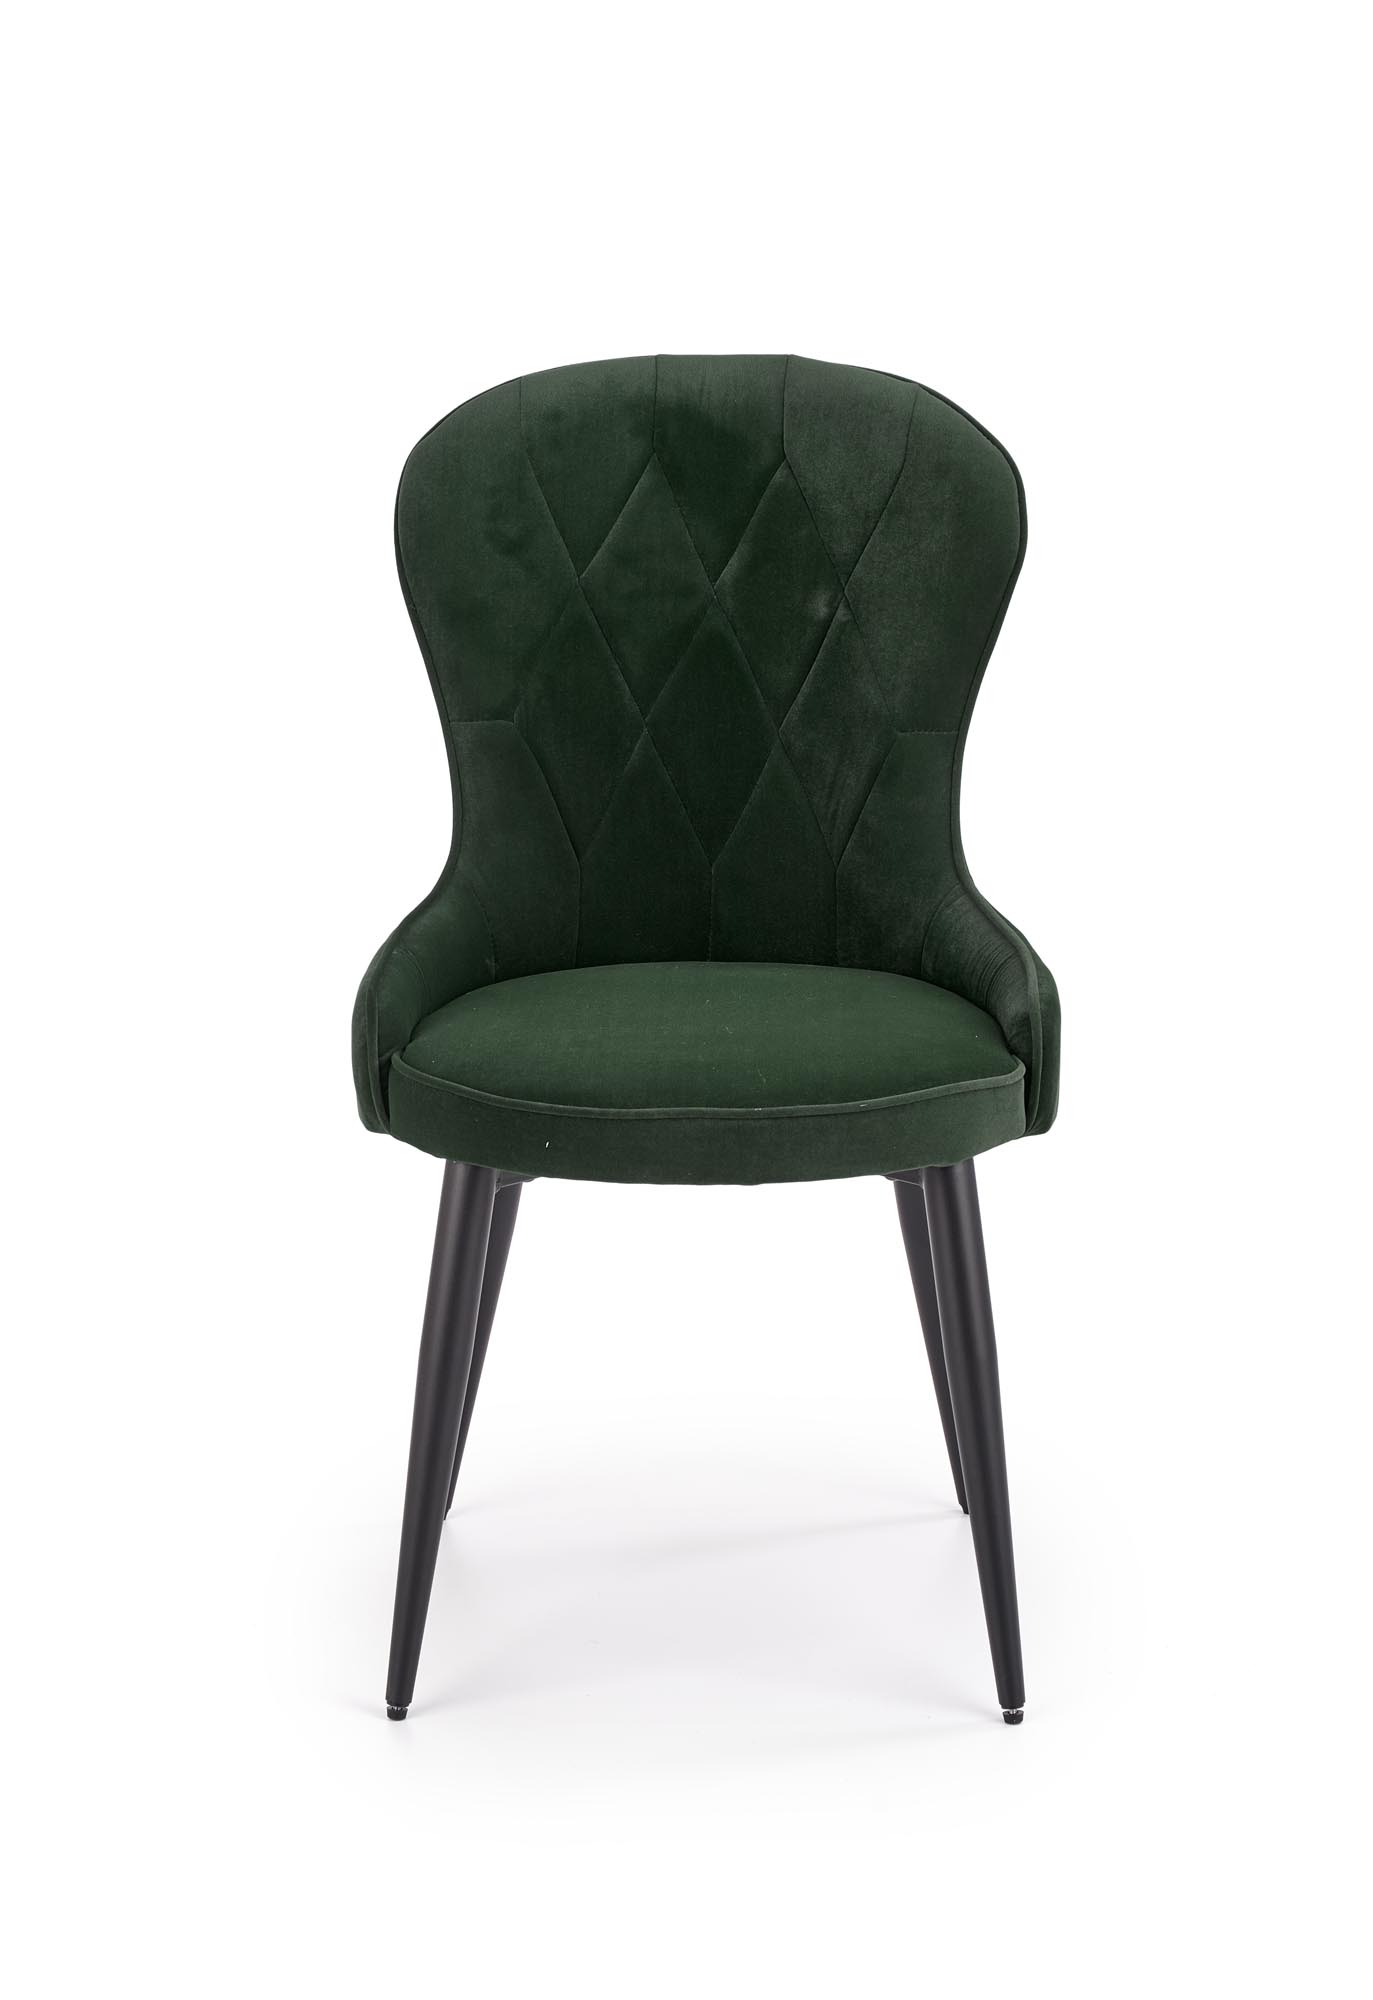 Stolička K366 - tmavý Zelený Stolička k366 - tmavý Zelený